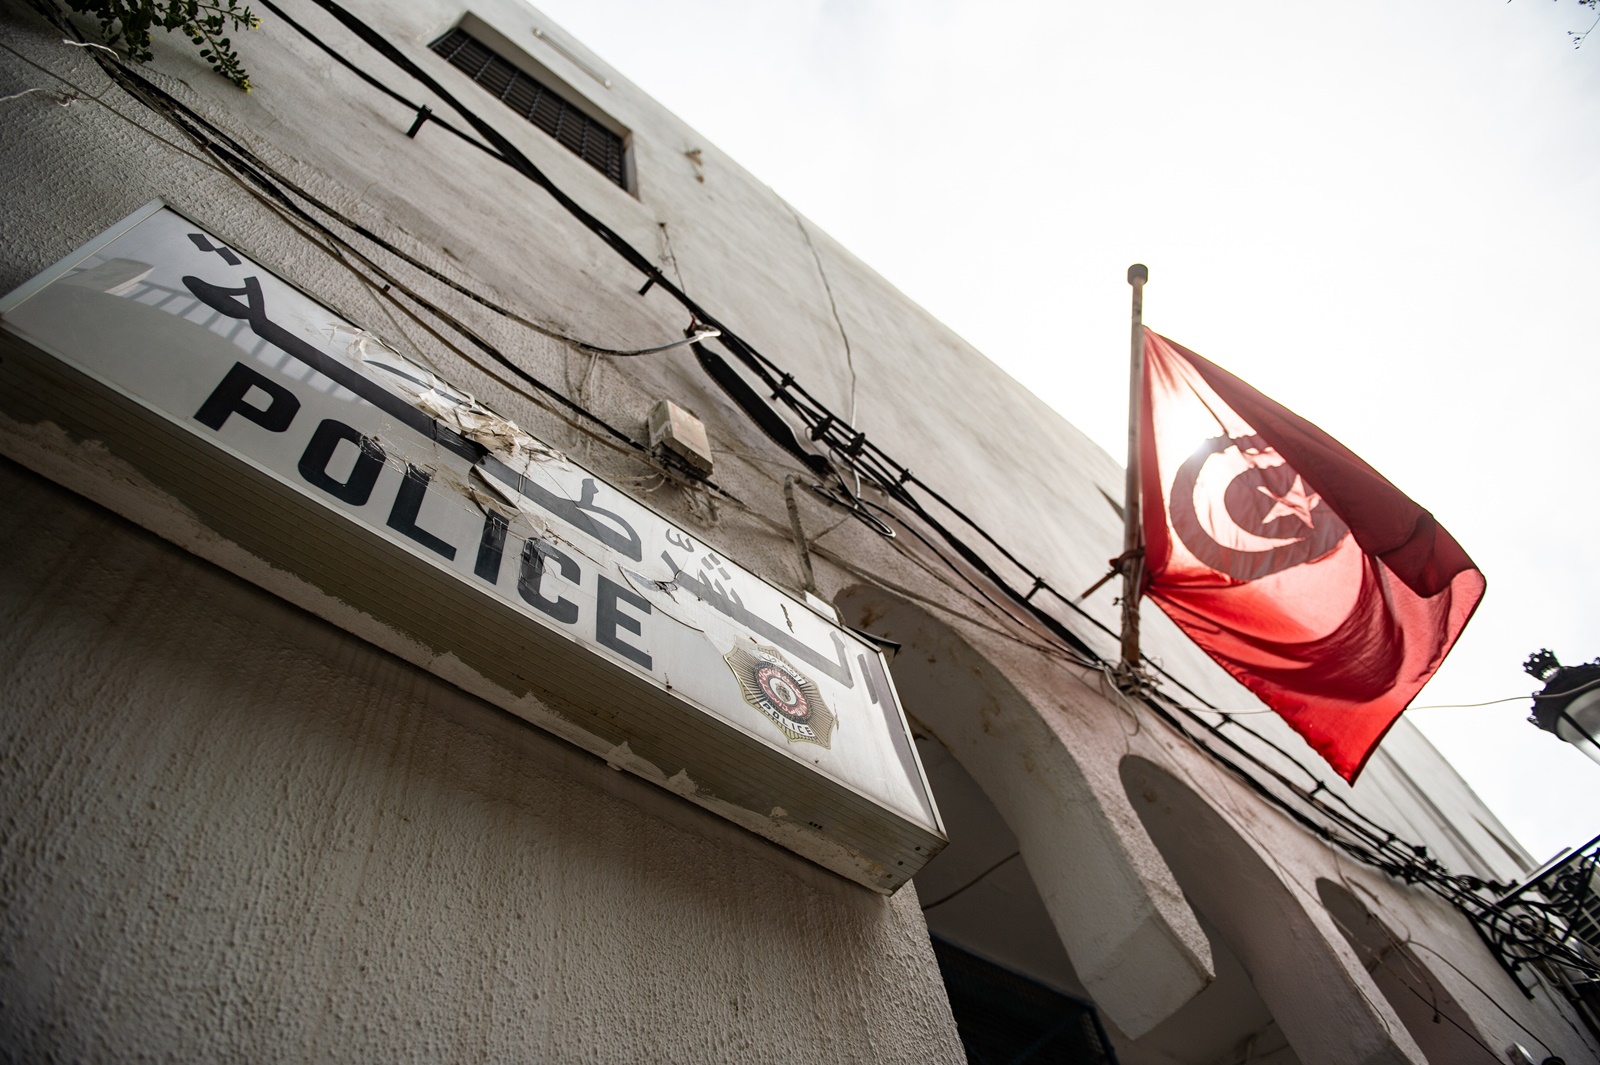 6χρονη Τουρκία: Υπόθεση σοκ, πάντρεψε την ανήλικη κόρη του με 29χρονο, την κακοποιούσε σεξουαλικά